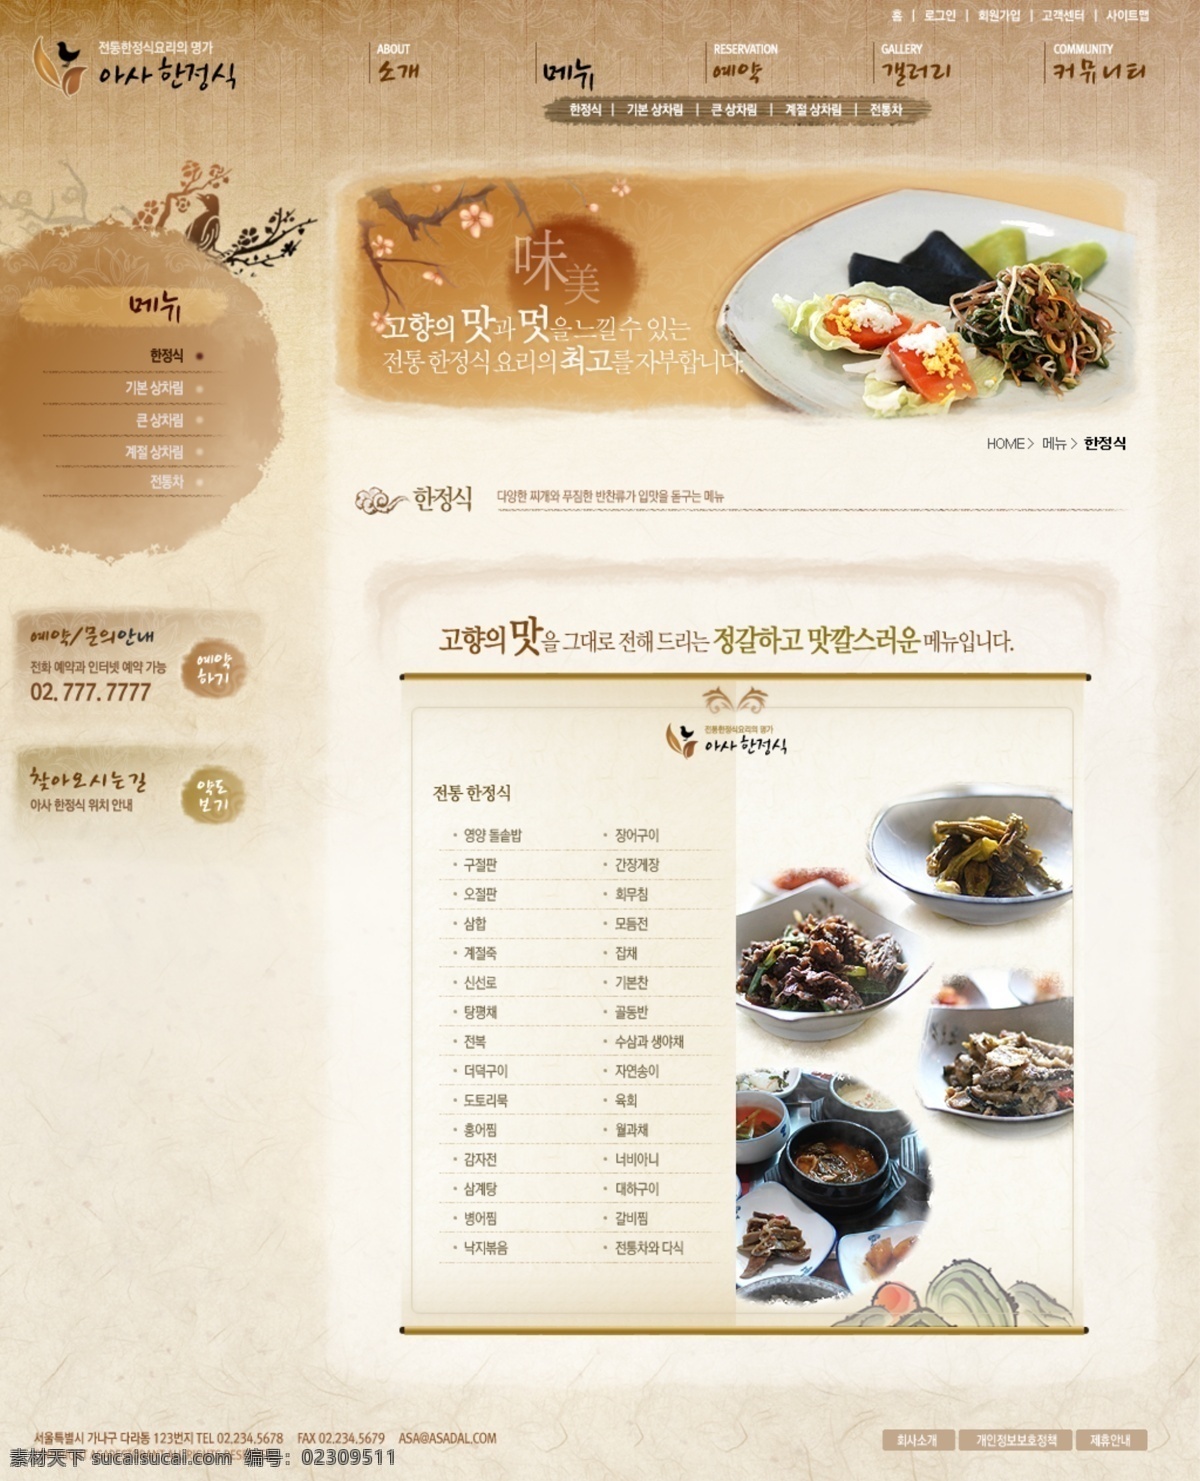 标识 餐饮 餐桌 茶具 符号 韩国模板 企业网站 食品 娱乐网页模版 娱乐网站 行业应用 饮品 网页模板 源文件库 网页模版 源文件 网页素材